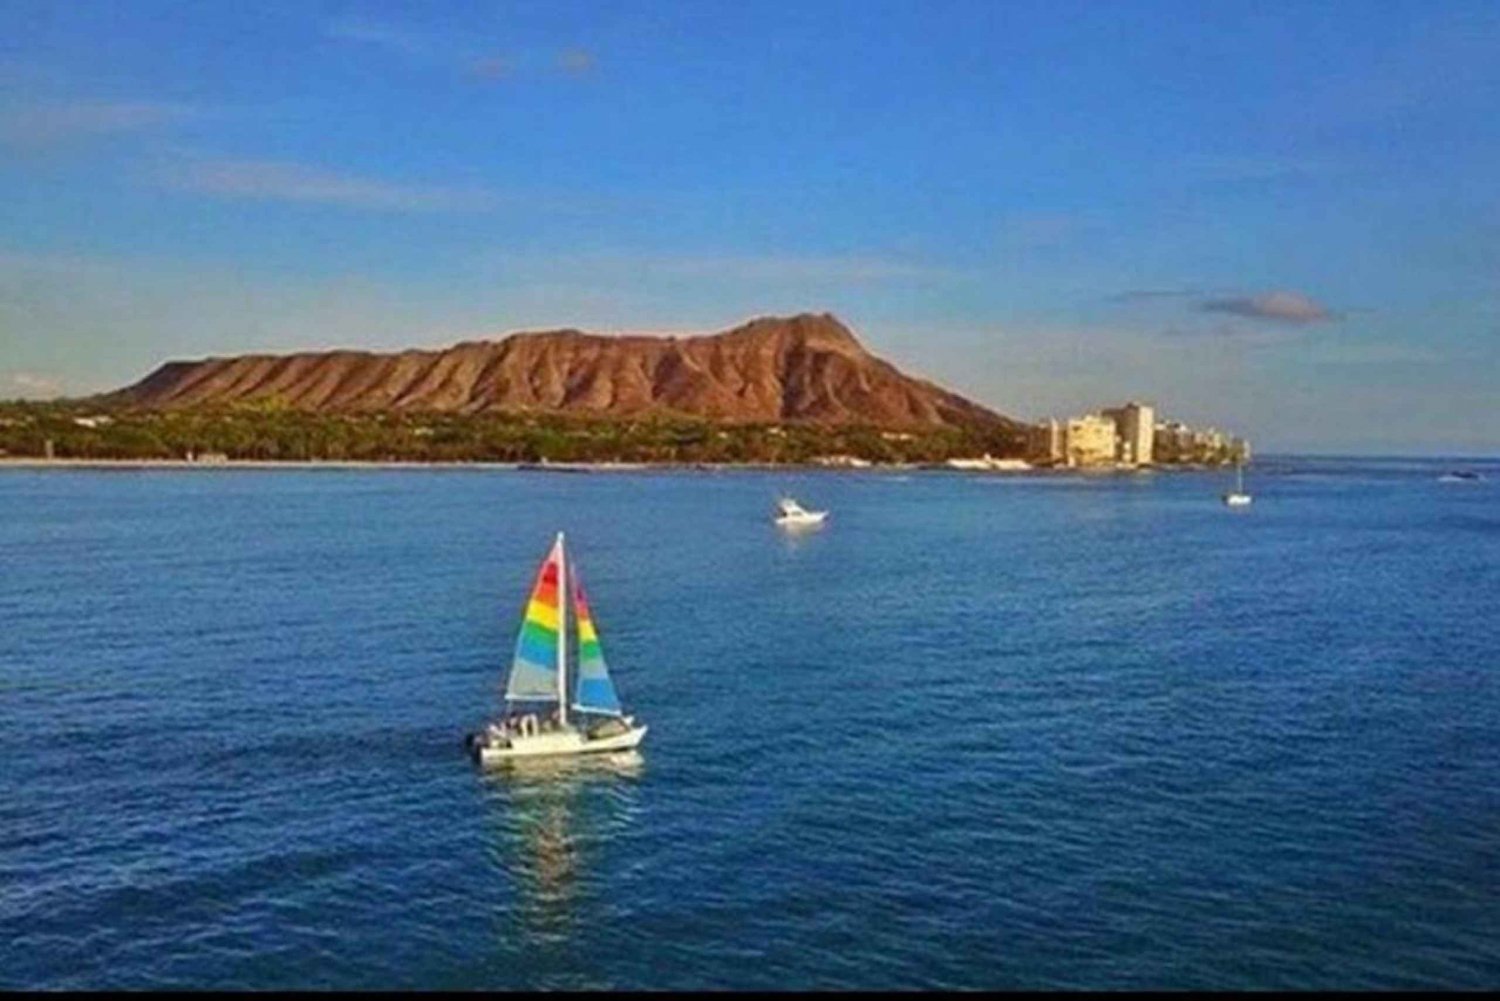 Waikiki: Tradewind Sail Catamaran Adventure